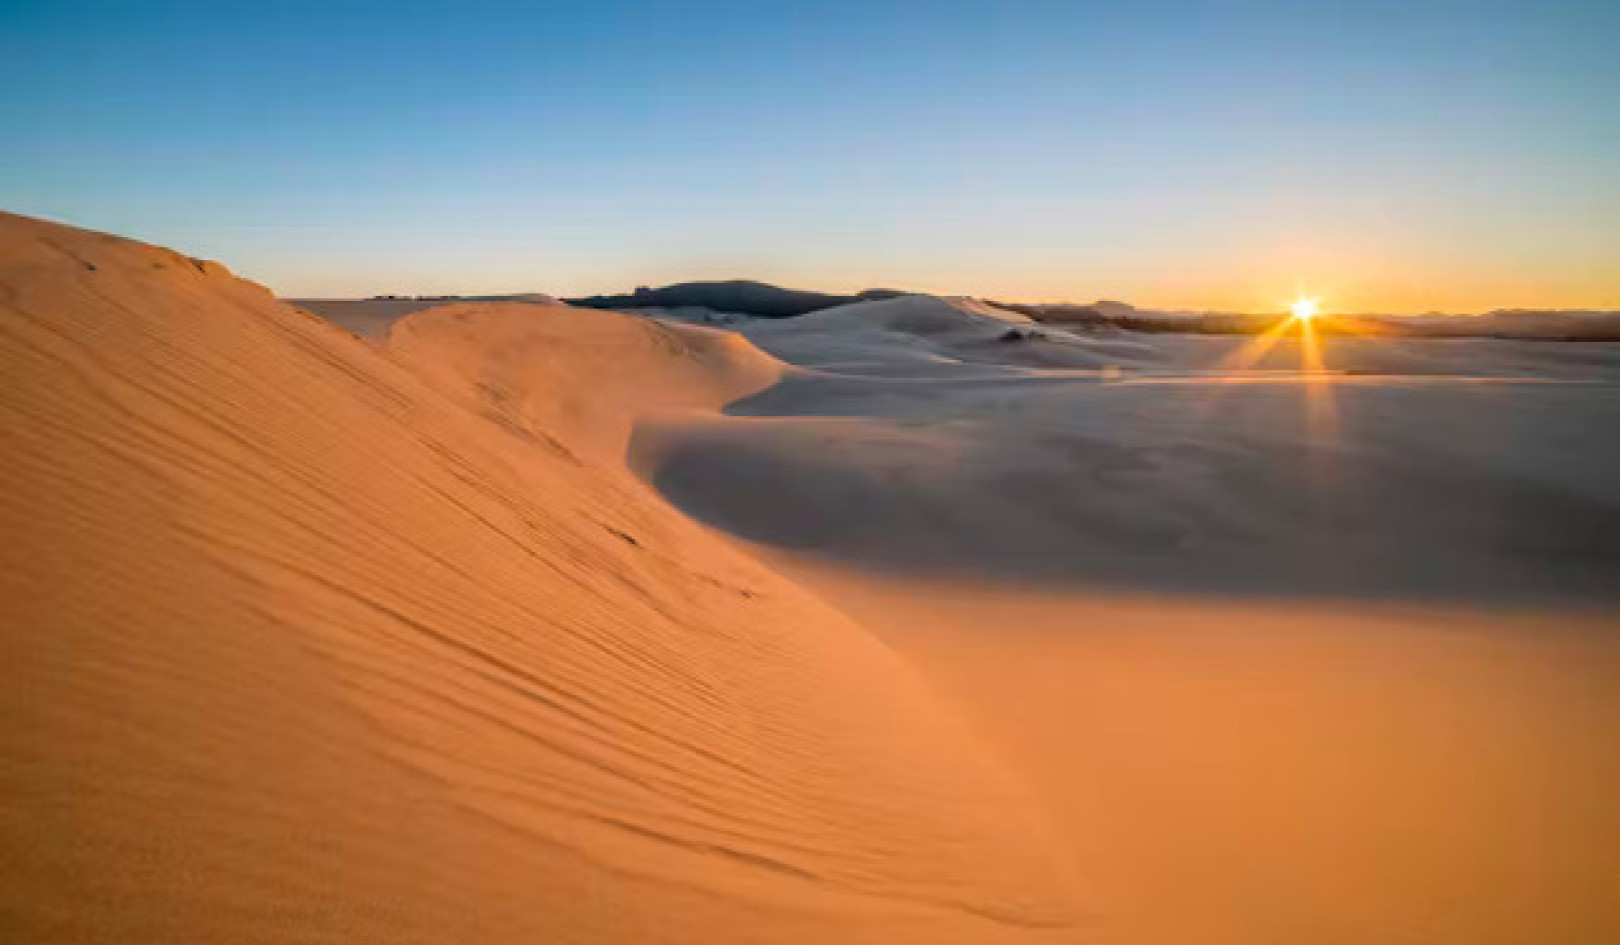 Hoe Dune de toekomst van milieubewegingen en ecologie vormgaf